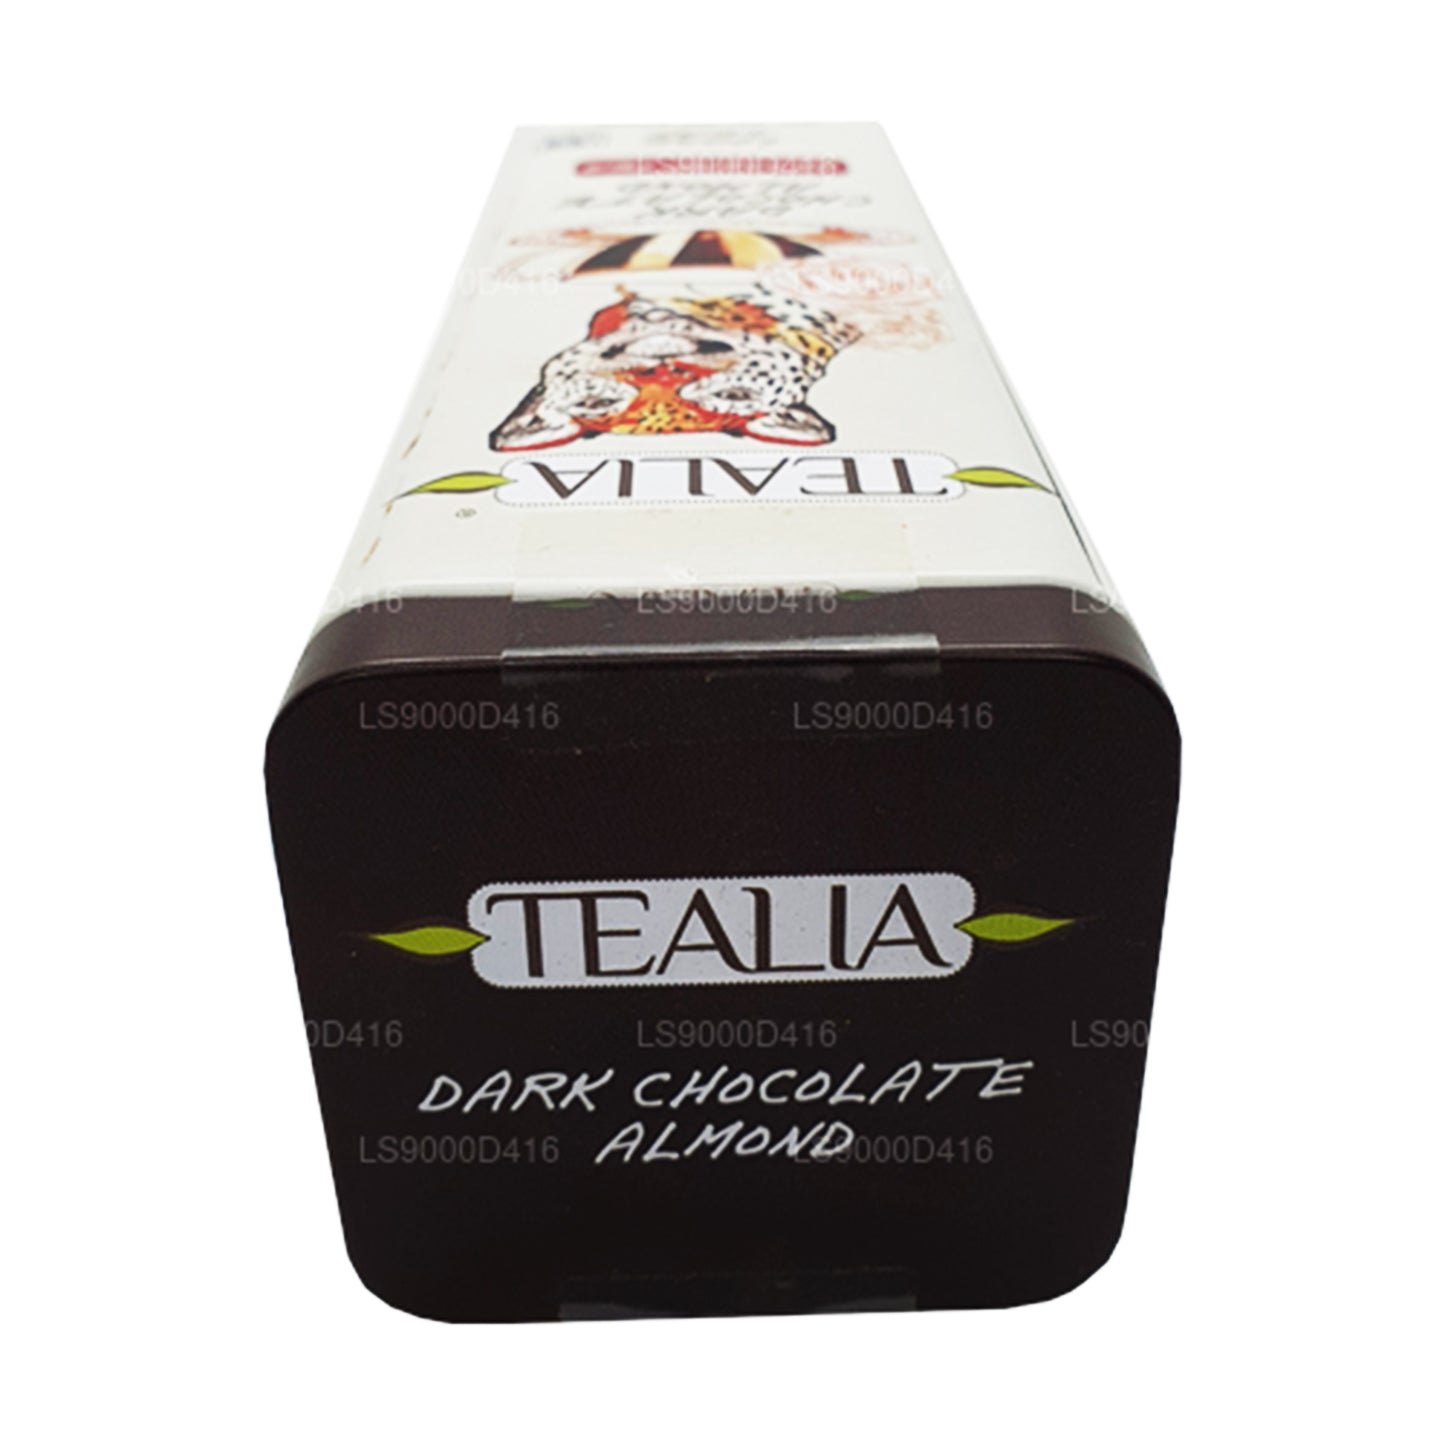 Hojas sueltas de almendras y chocolate negro Tealia (100 g)